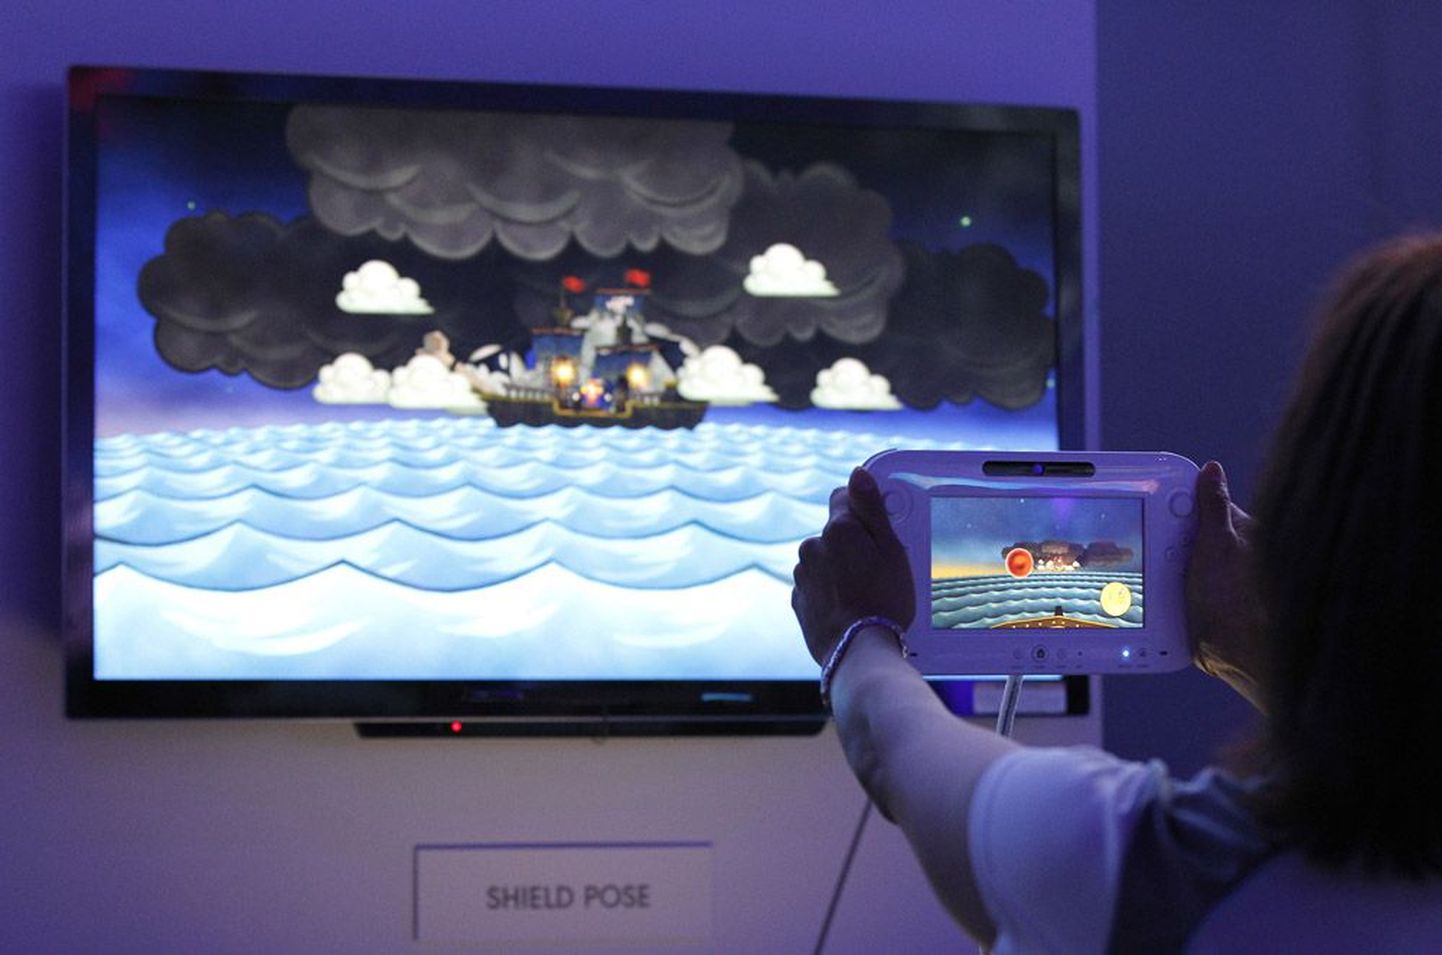 Nintendo uue mängukonsooli Wii U juhtimiseks kasutatakse uuenduslikku ekraaniga juhtpulti.